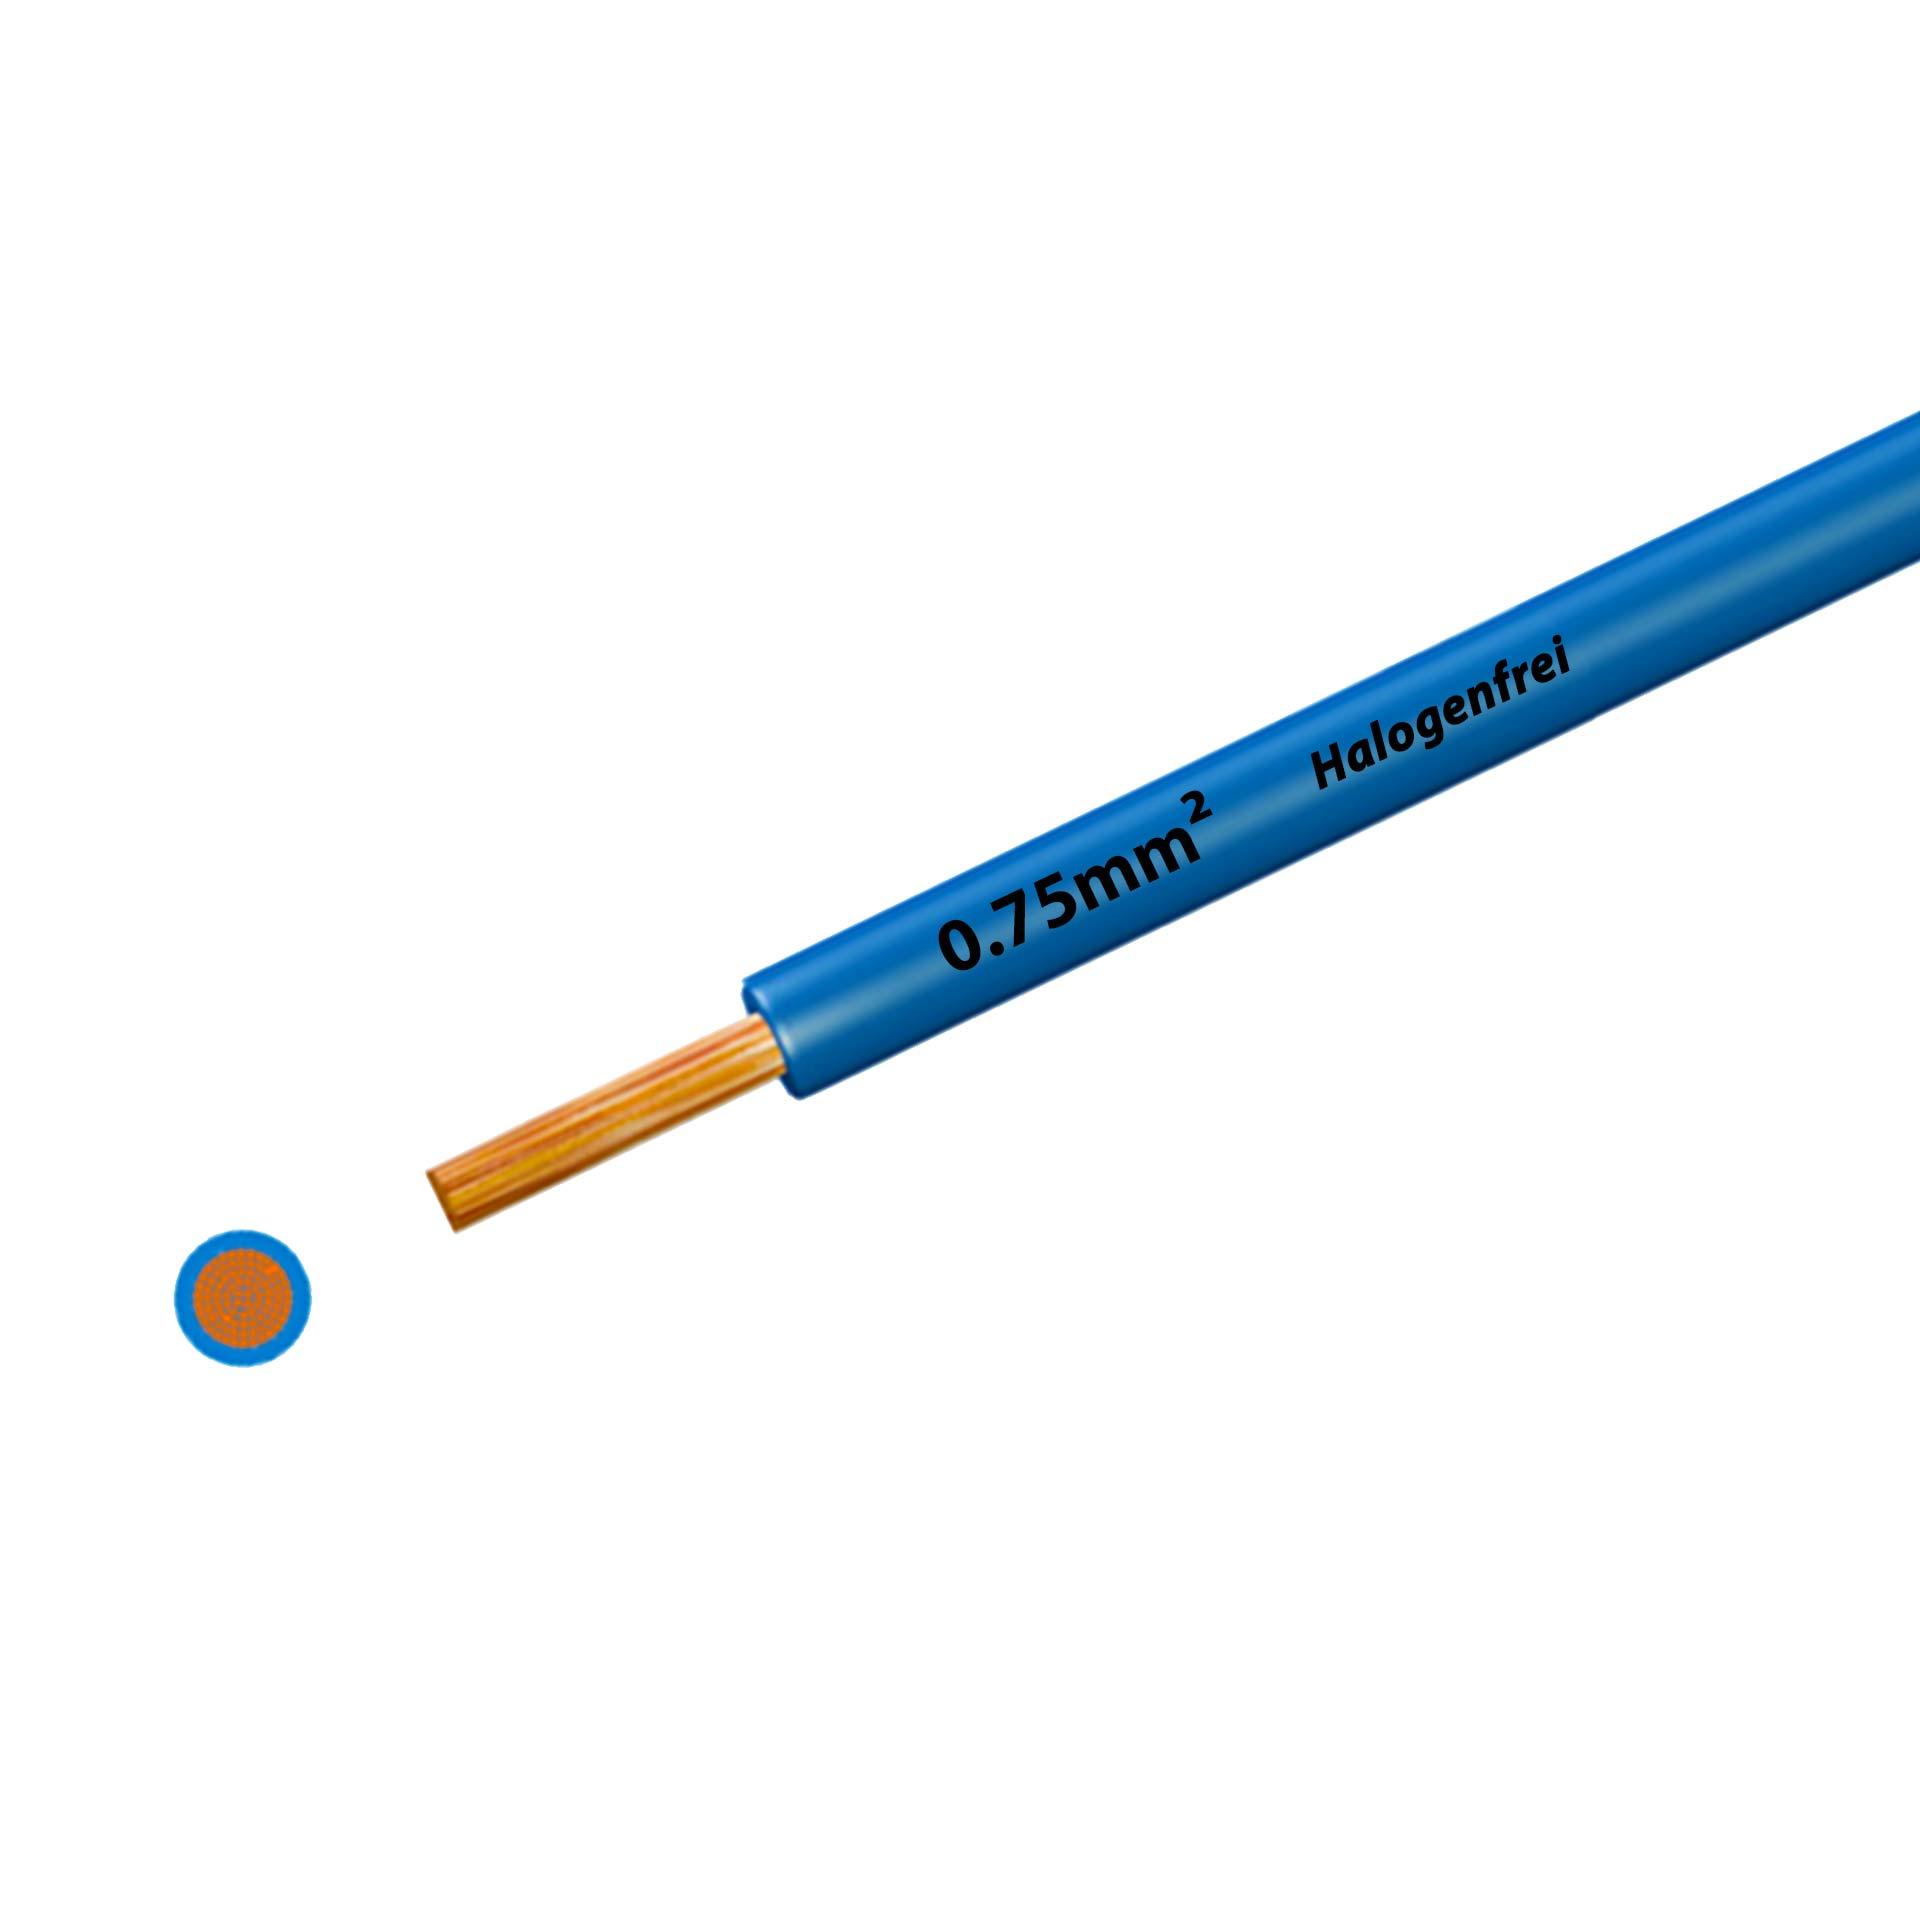 Litze halogenfrei 90° C , 500V, 0.75 mm2, hellblau (RAL 5012), auf Kunststoffrolle